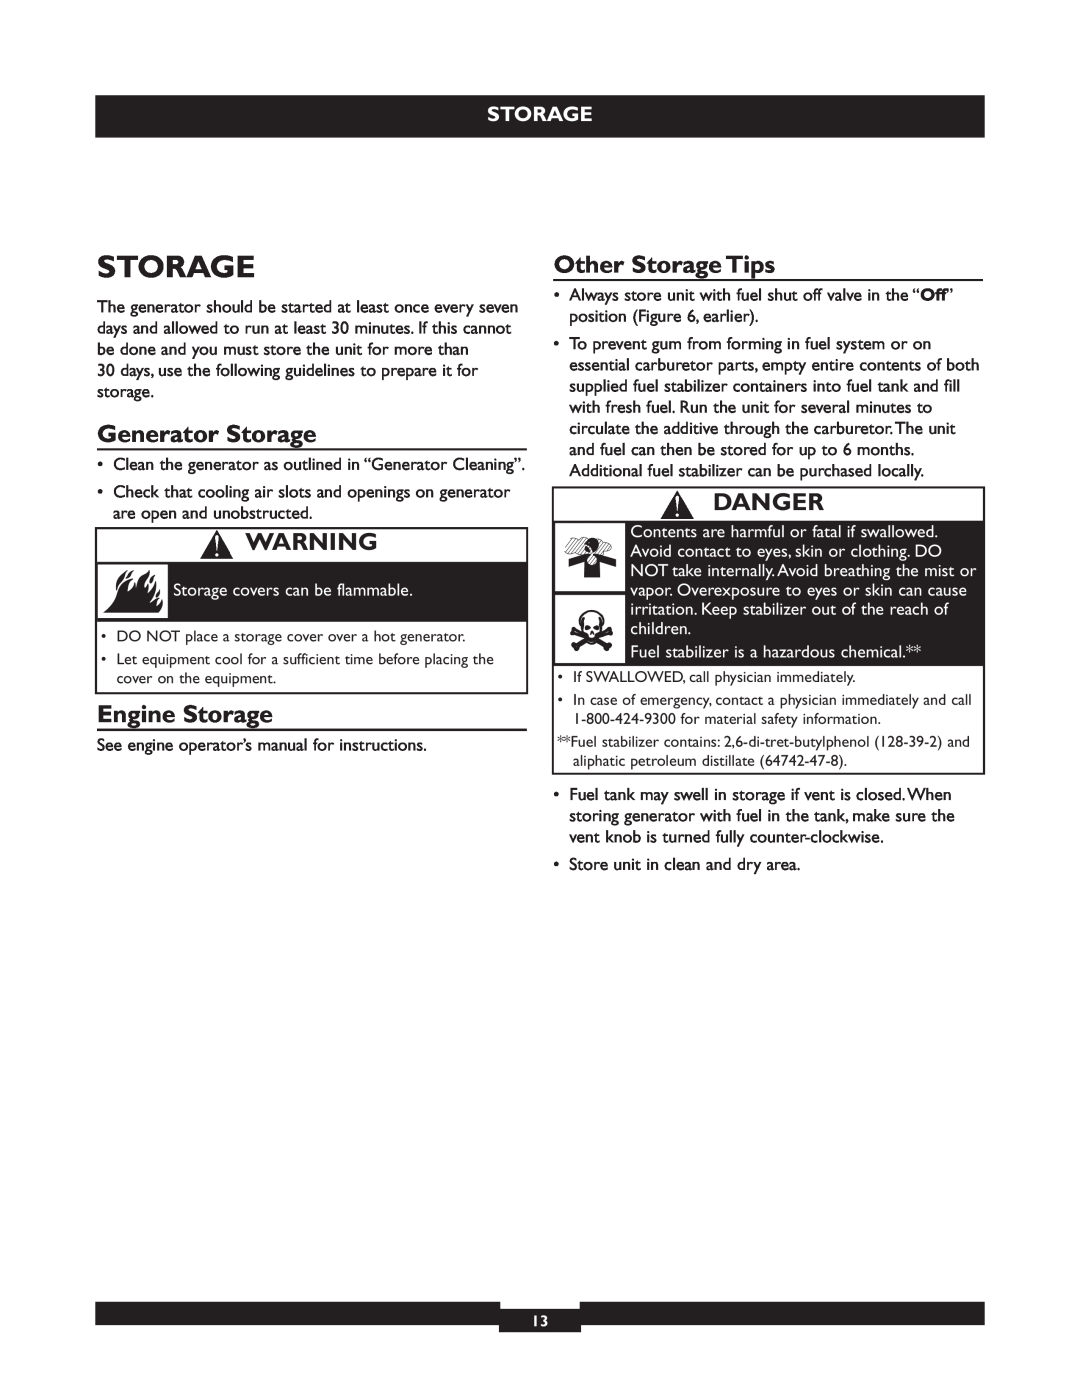 Briggs & Stratton 01655-3 manuel dutilisation Generator Storage, Engine Storage, Other Storage Tips, Danger 